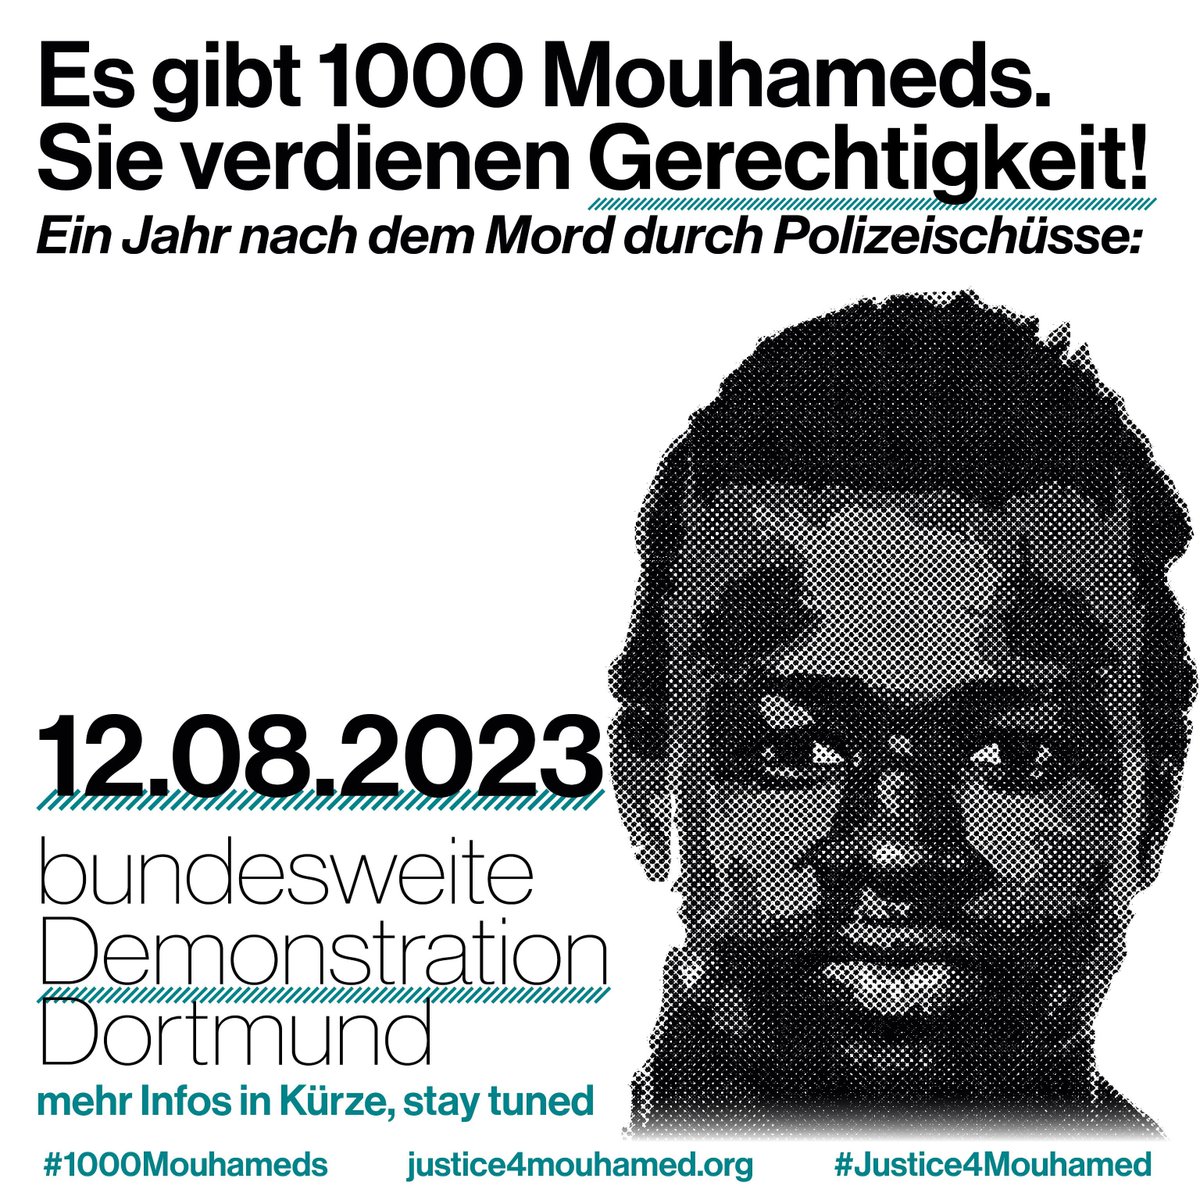 save the date!

#justice4mouhamed  #KeinEinzelfall #Polizeiproblem #SayTheirNames #Polizeigewalt  #Rassismus #do1911 #Dortmund  #topa  #Polizei #NoJusticeNoPeace #BlackLivesMatter #ViolencesPolicieres #keinvergebenkeinvergessen